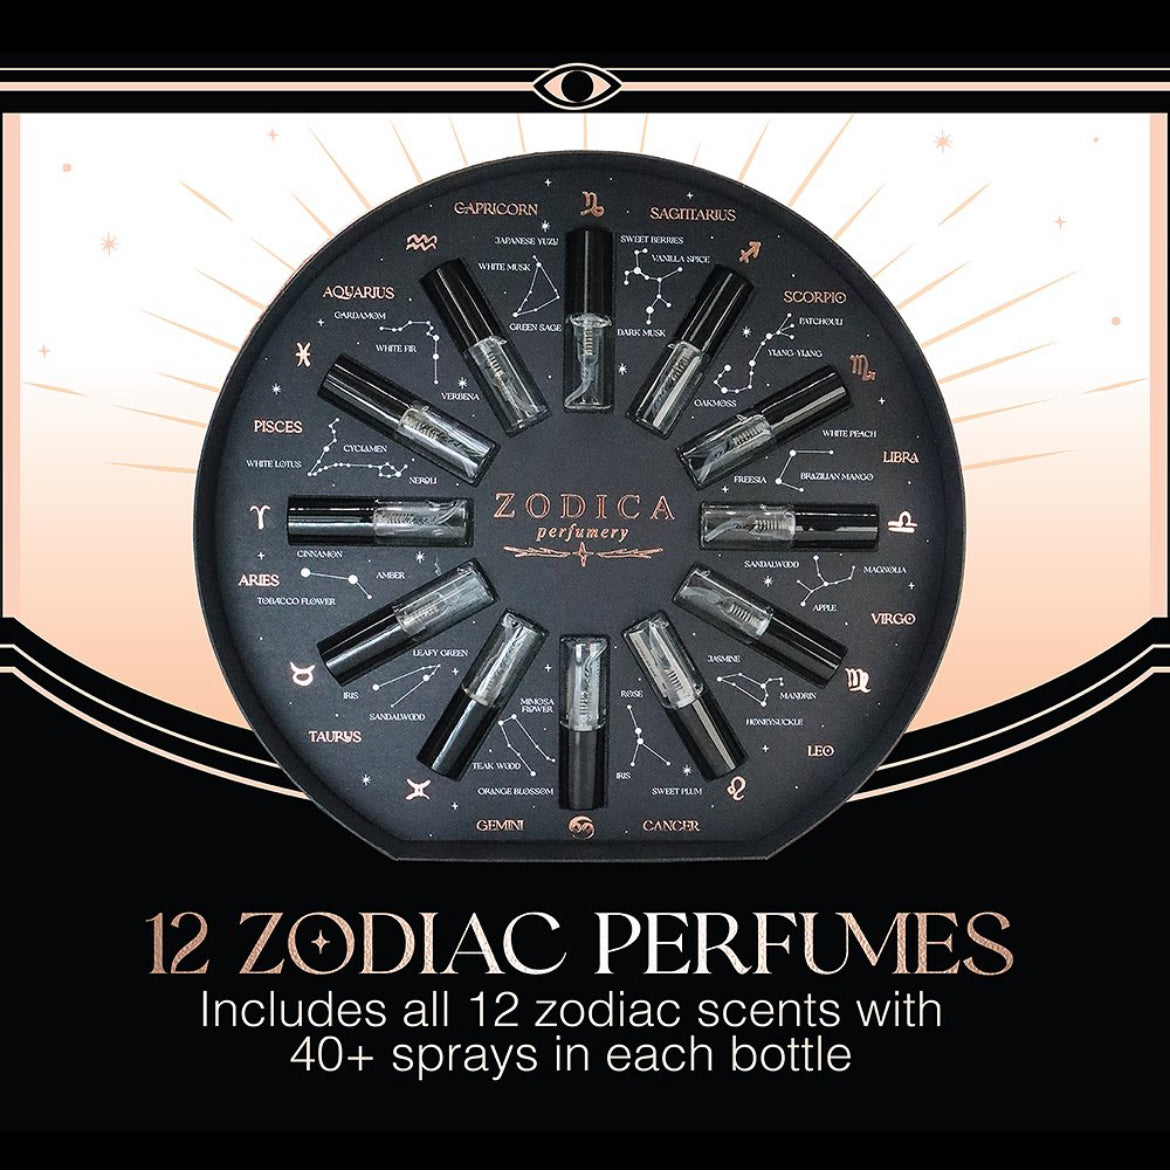 zodiac perfume palette